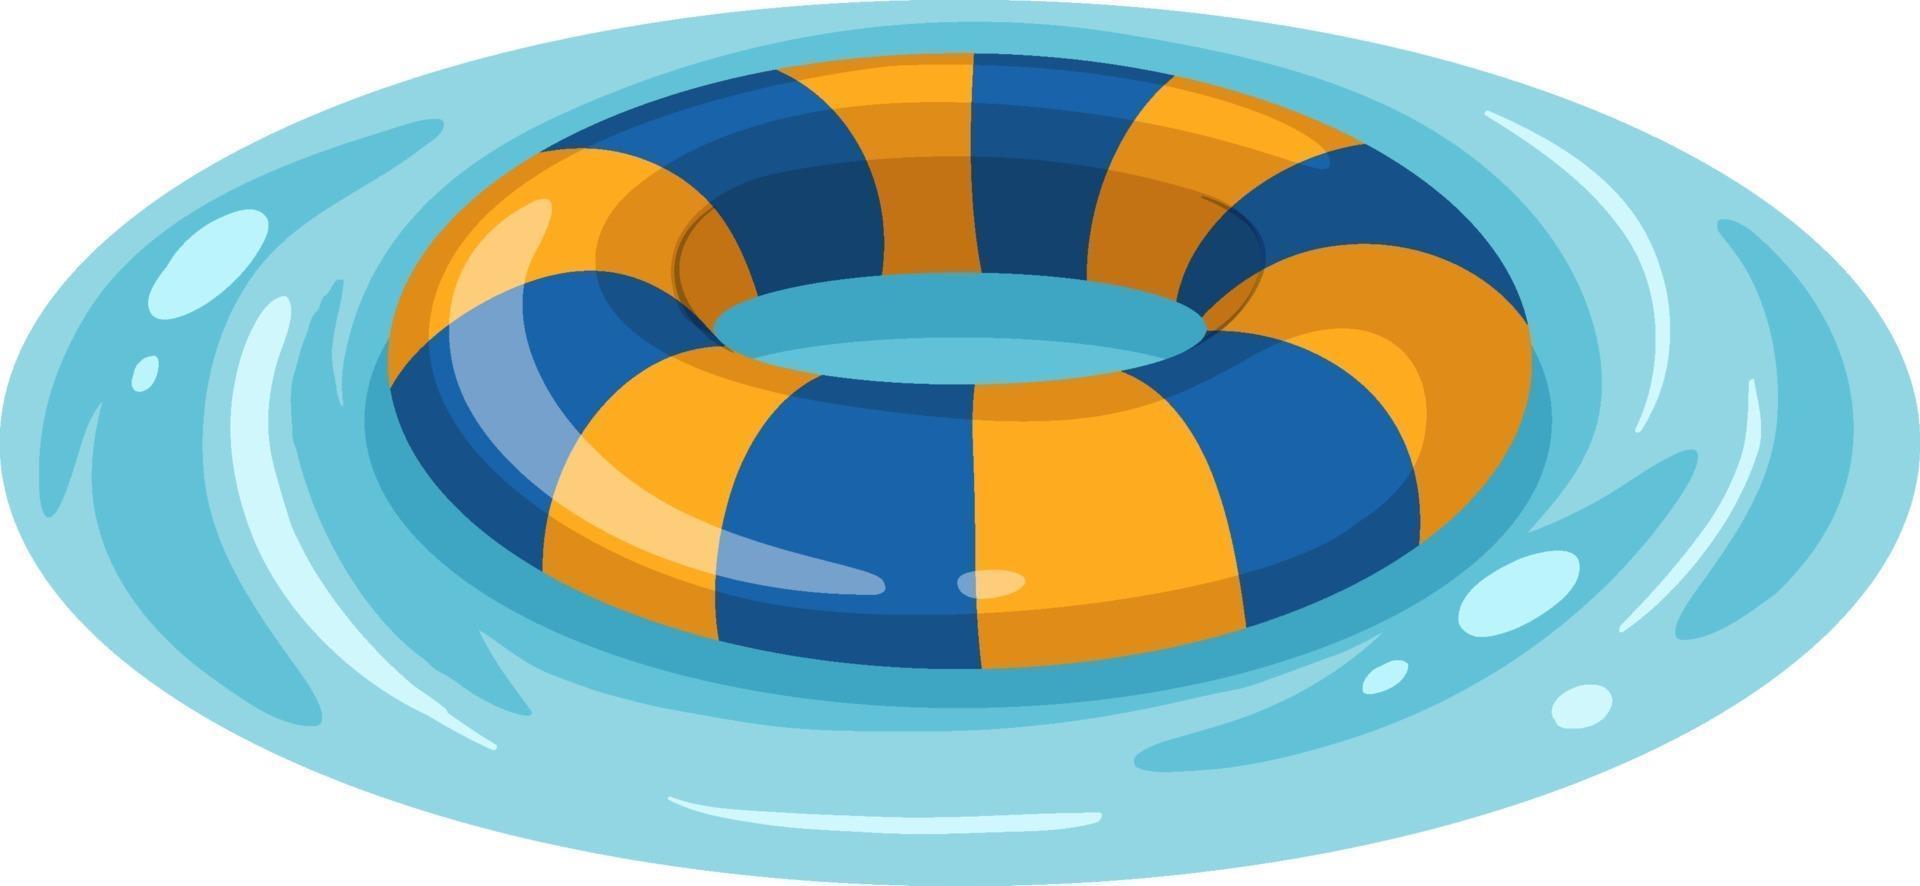 anneau de natation rayé bleu et jaune dans l'eau isolé vecteur